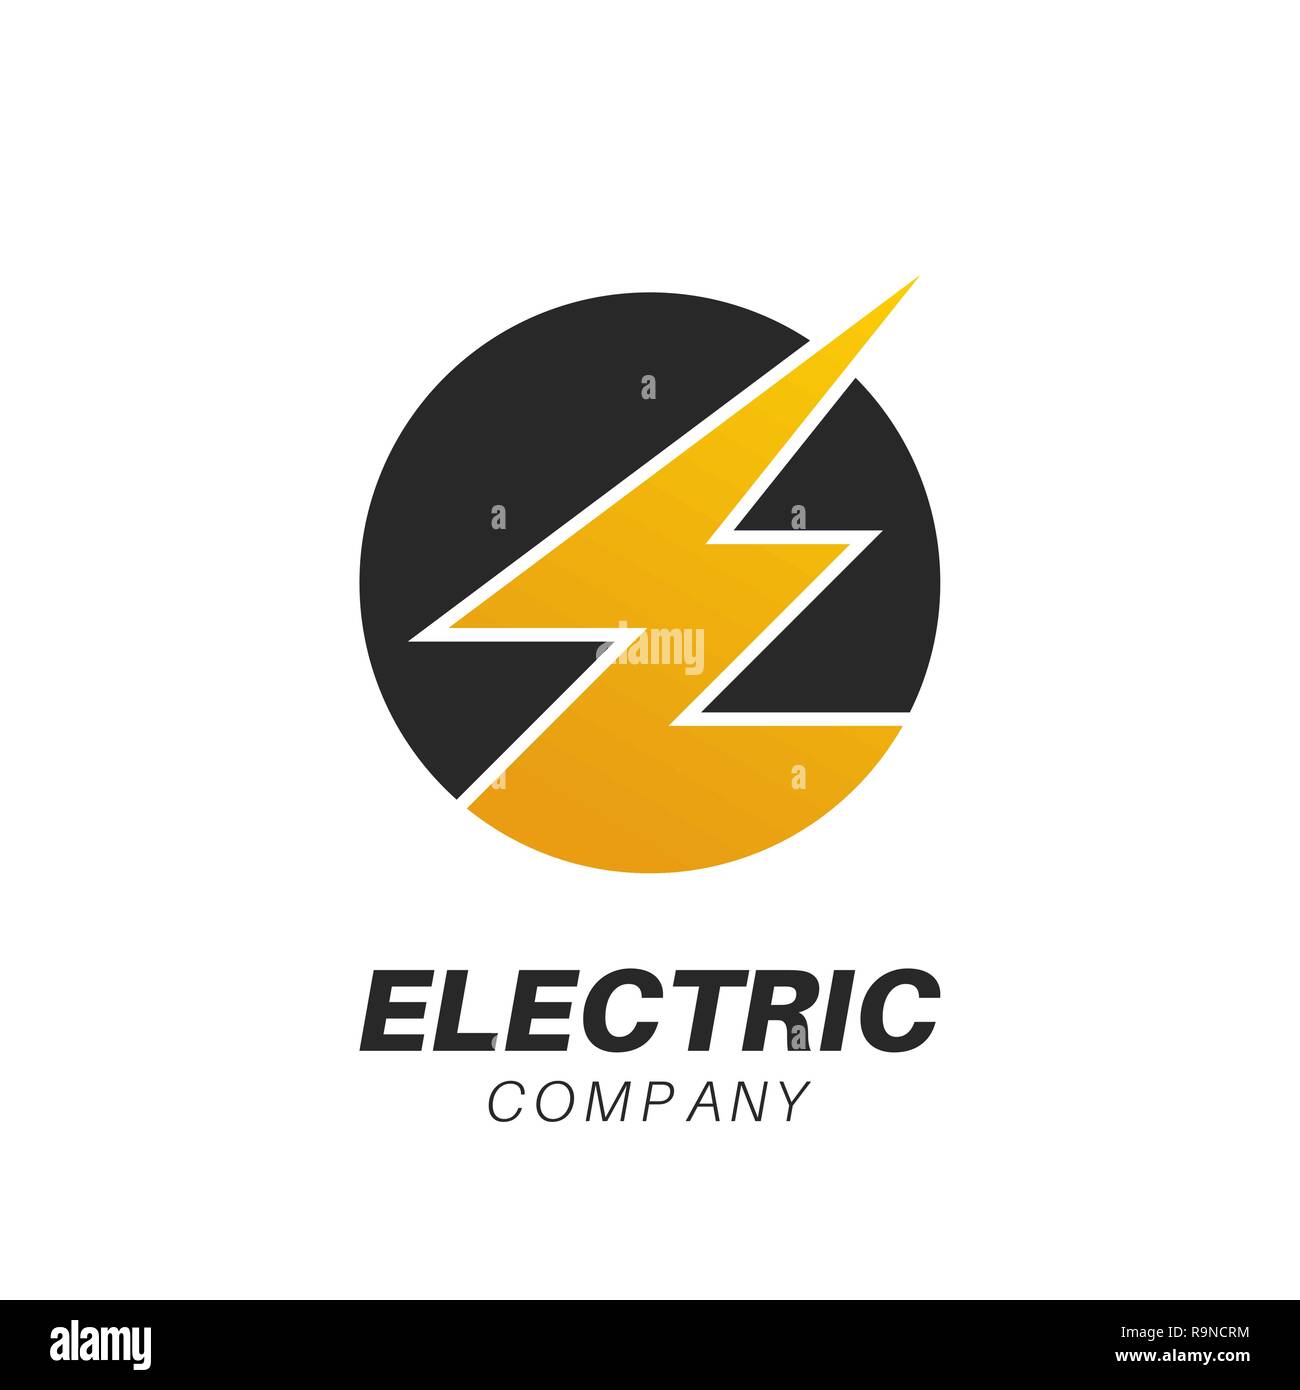 Plantilla Para Un Logotipo De La Compañía Eléctrica El Servicio De